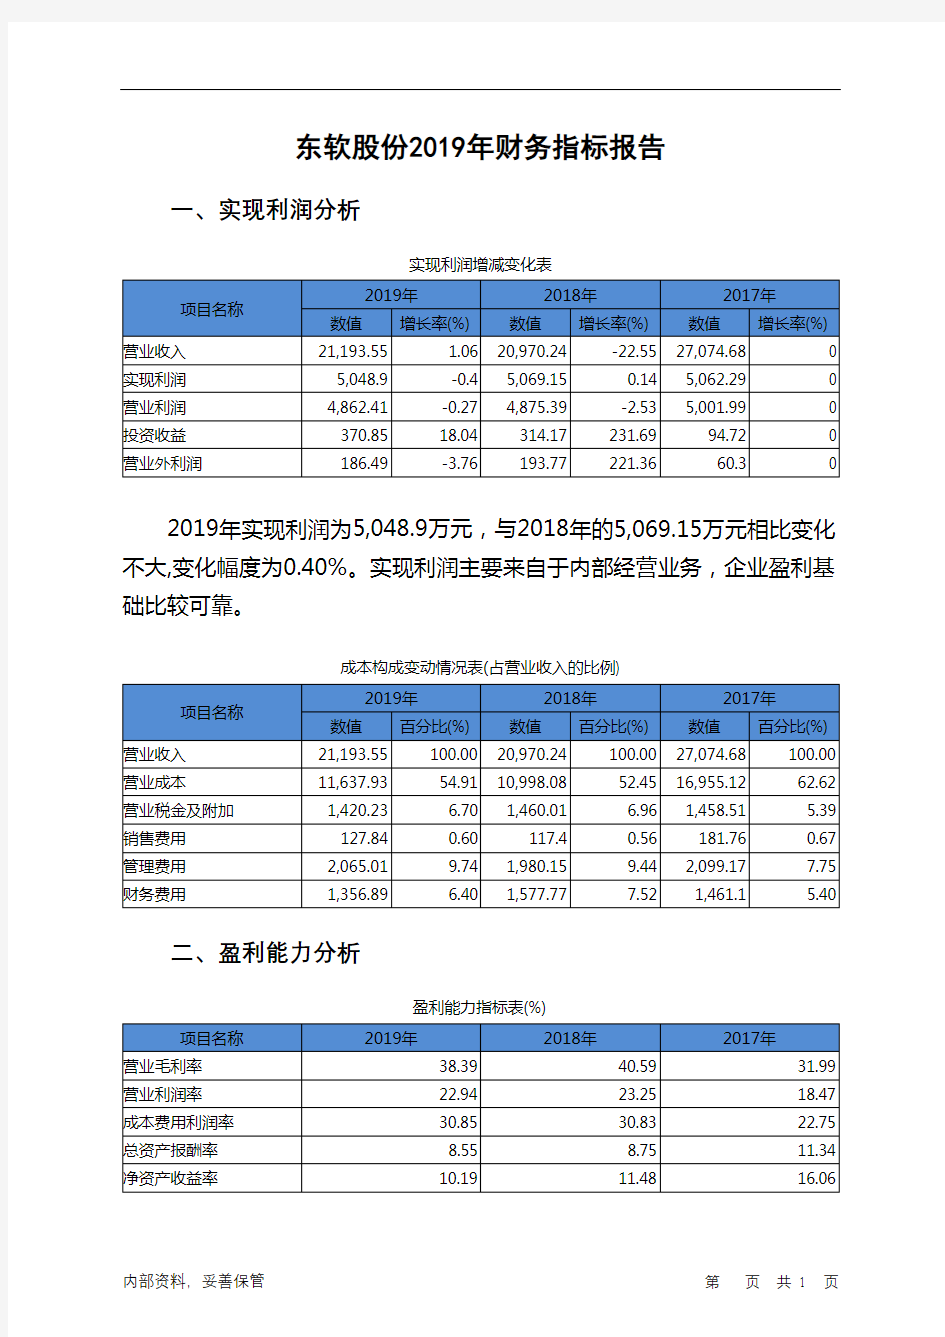 东软股份2019年财务指标报告